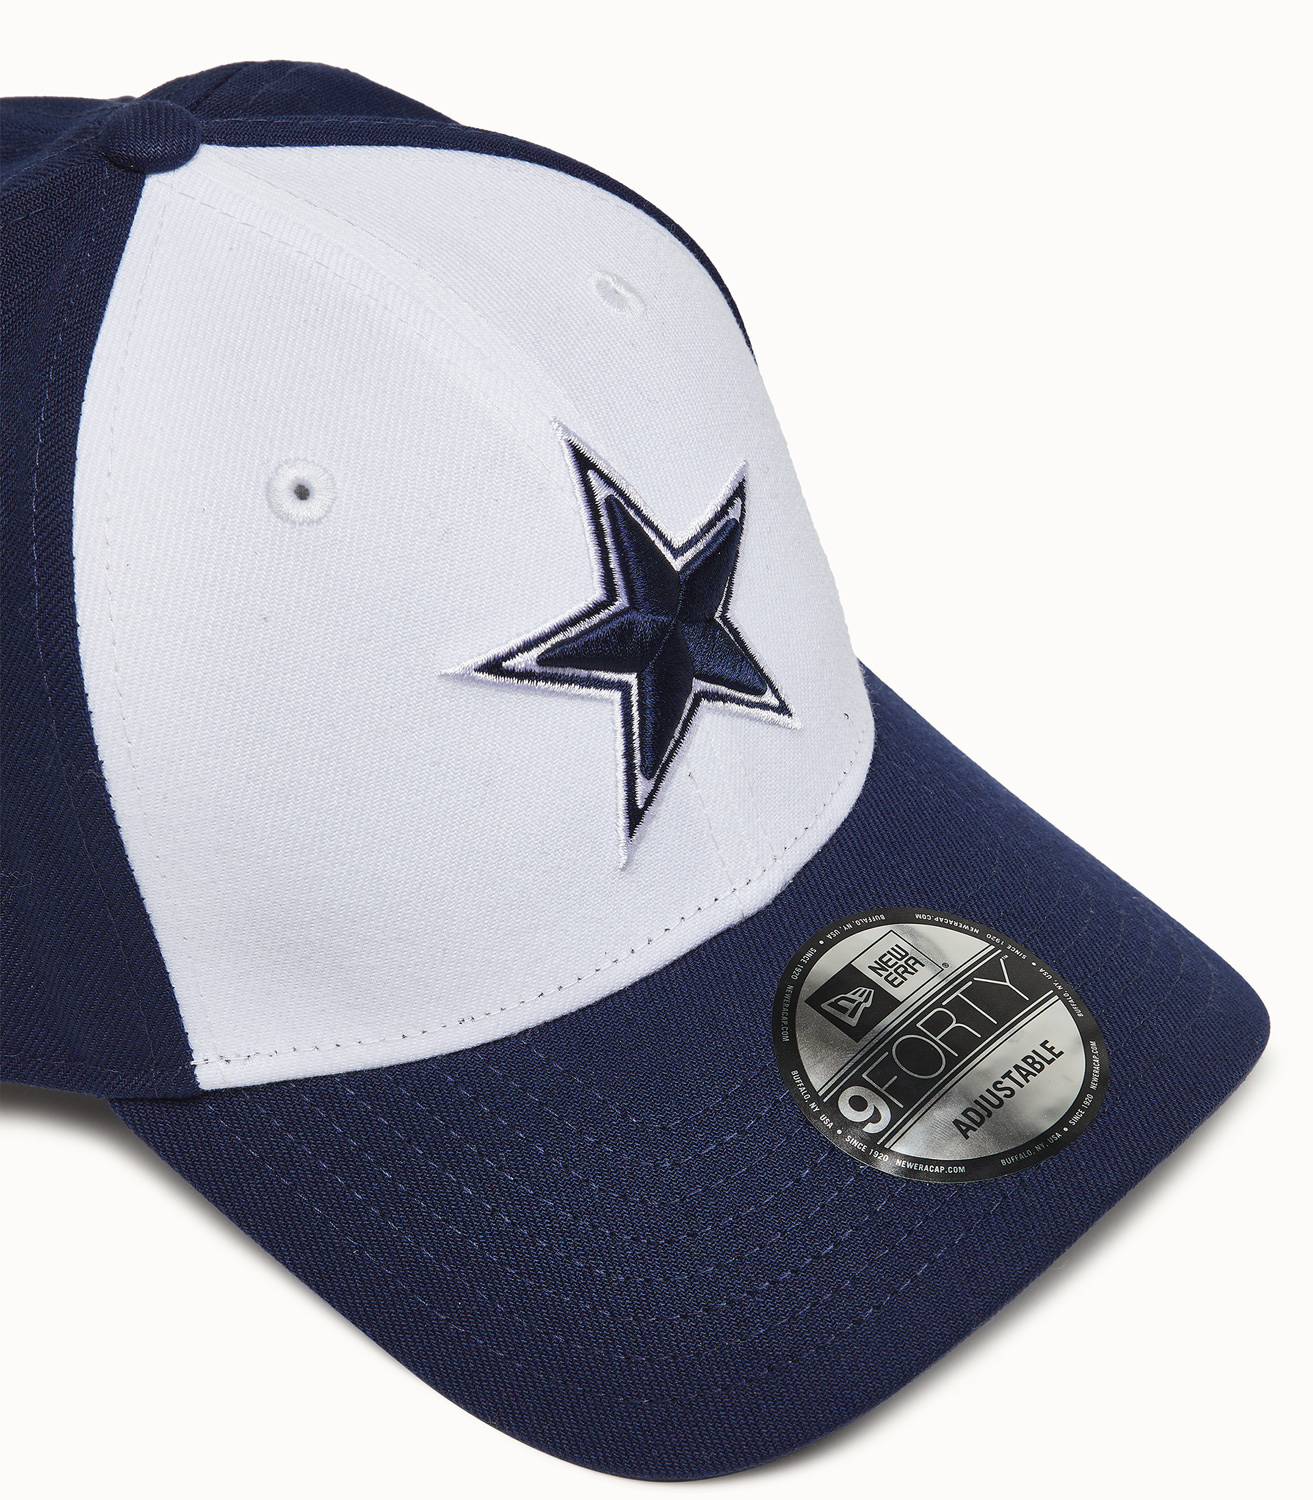 Dallas Cowboys New Era Hats